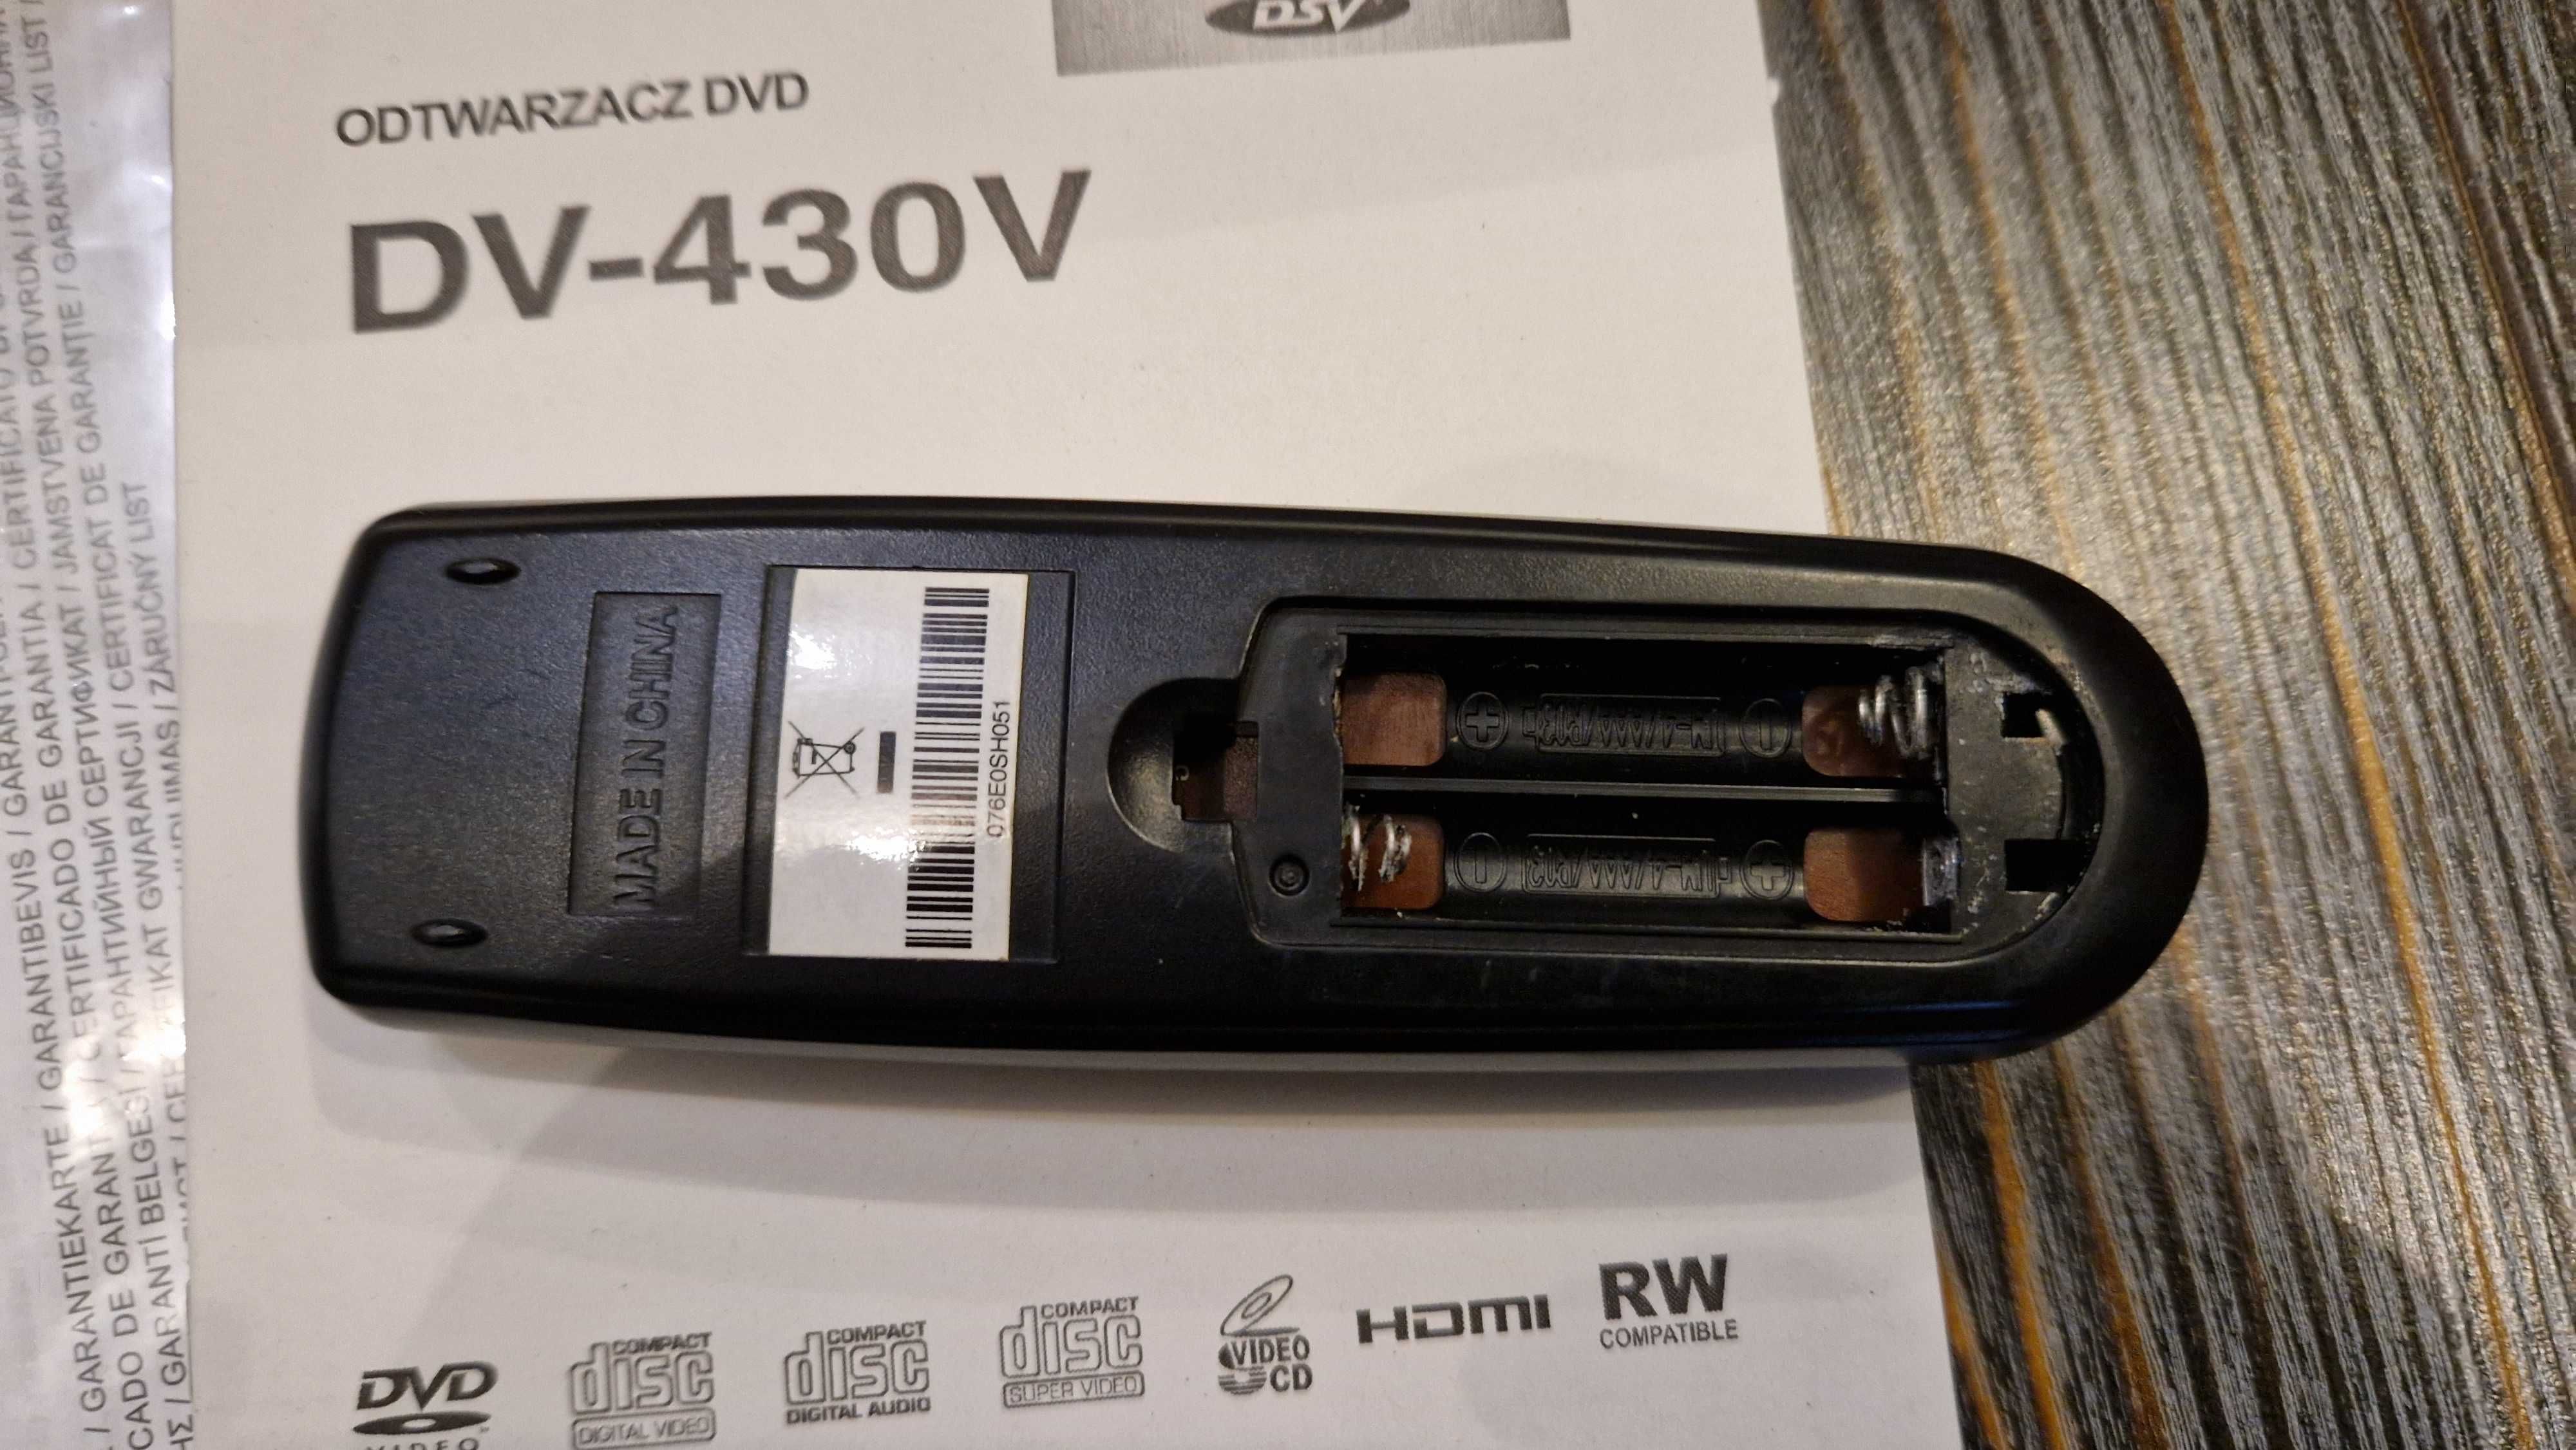 Odtwarzacz DVD Pioneer DV-430V - HDMI